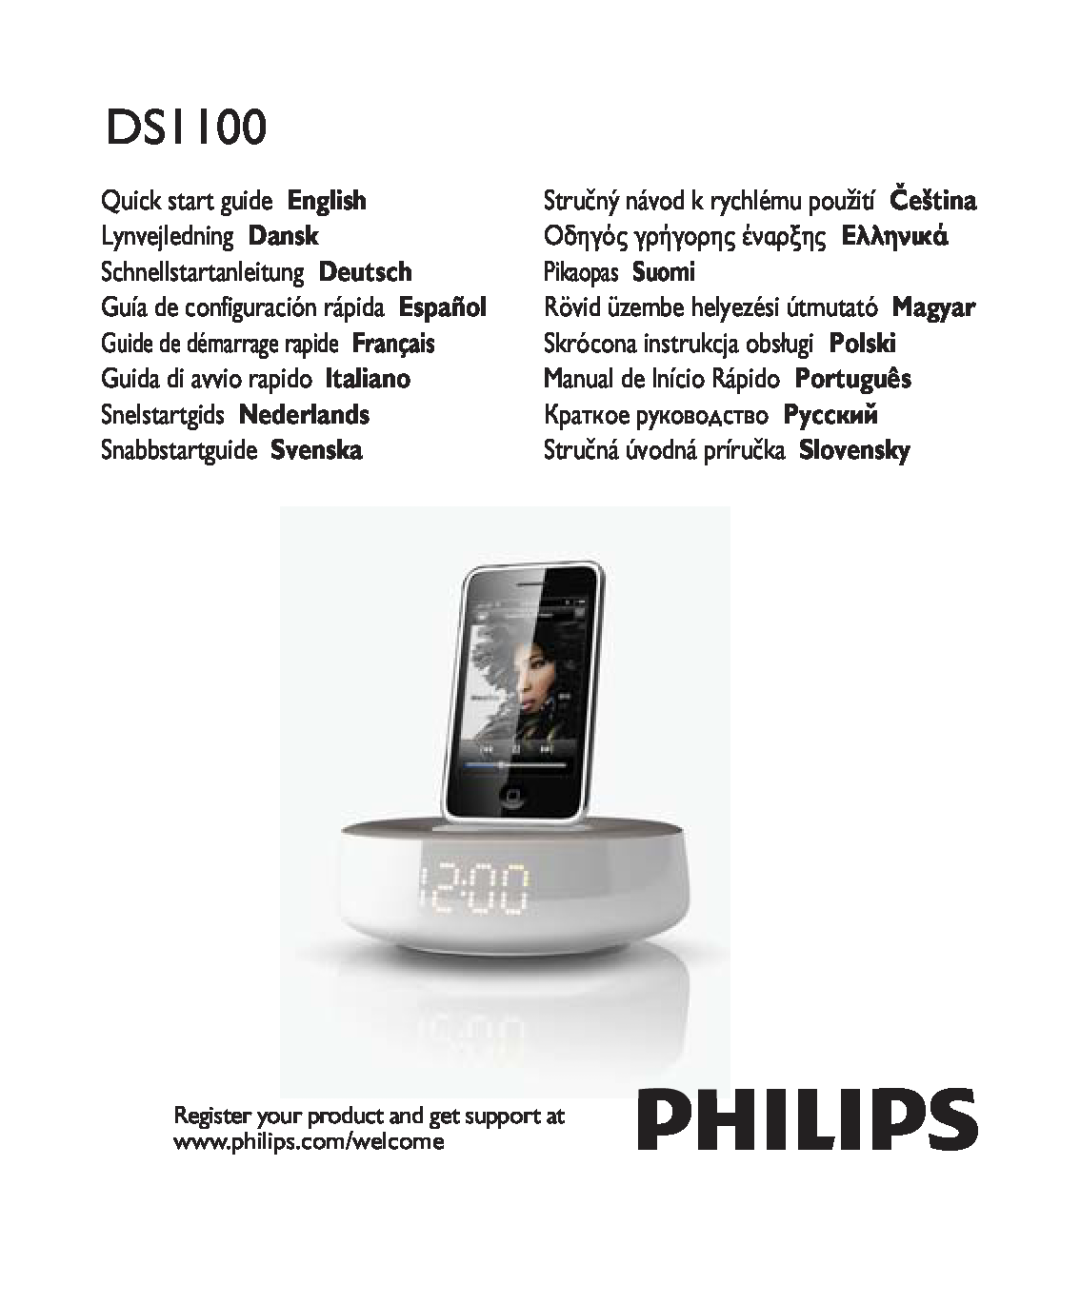 Philips DS1100 quick start Quick start guide English, Stručný návod k, Čeština, Lynvejledning Dansk, Pikaopas Suomi 